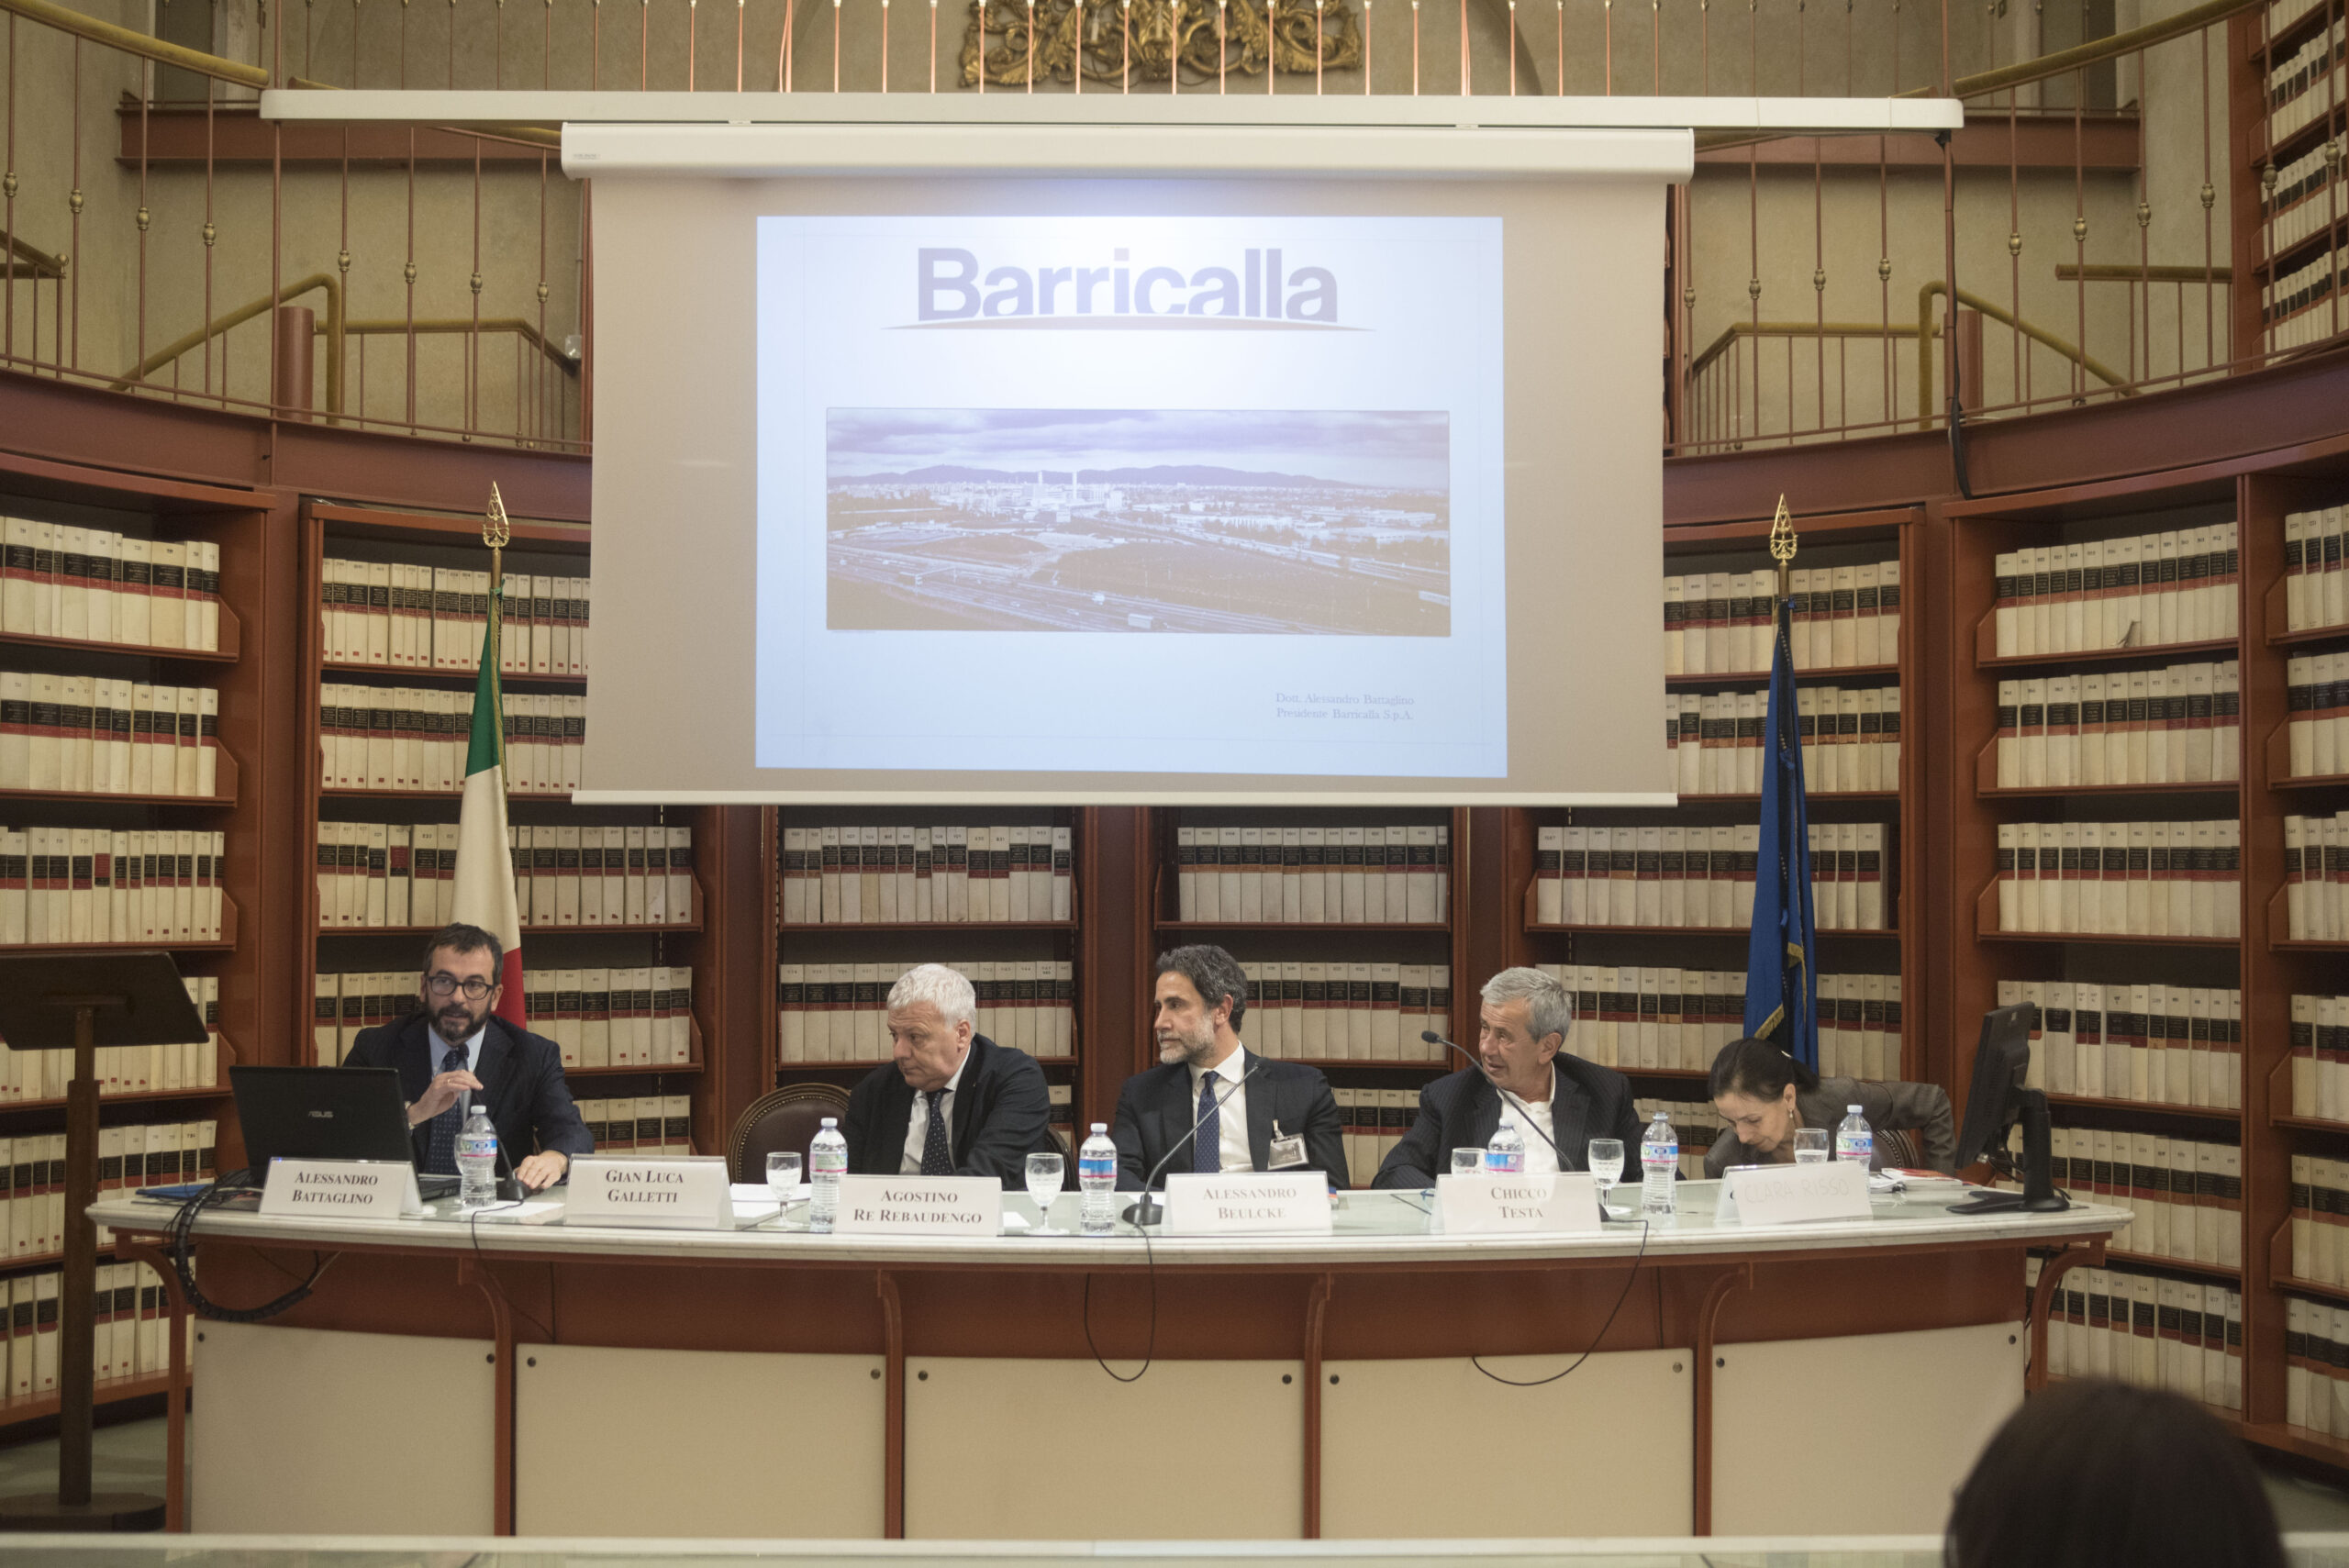 Alessandro Battaglino (Barricalla), Gian Luca Galletti (min. Ambiente), Alessandro Beulcke (Allea), Chicco Testa (Sorgenia), Clara Risso (TAP Italia)